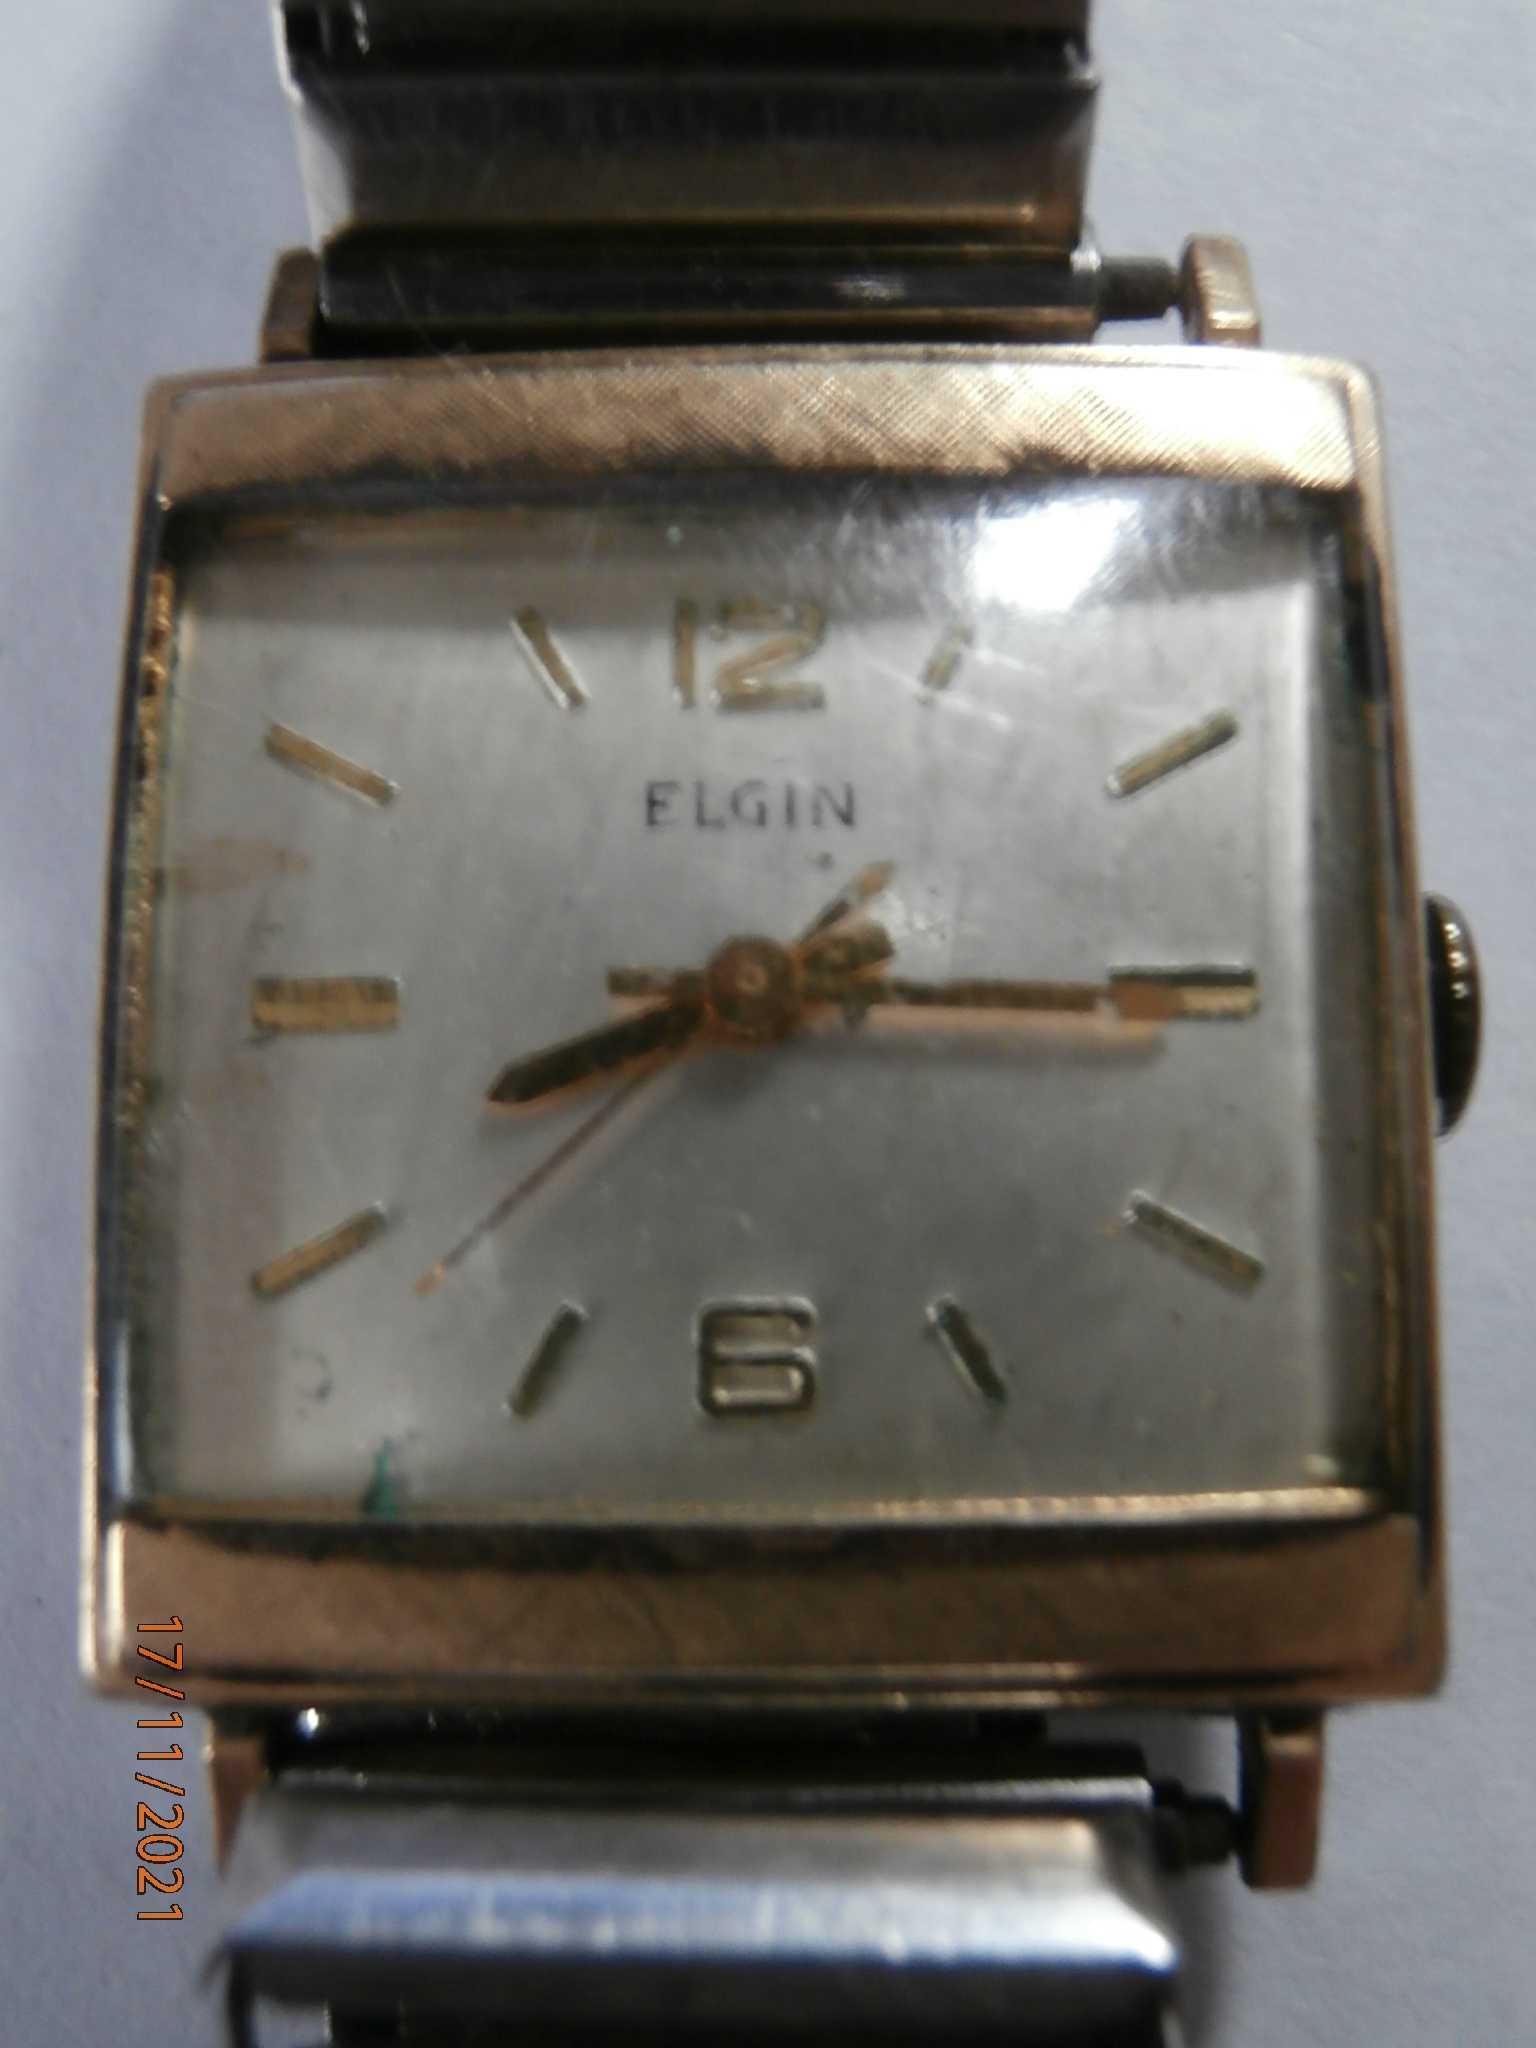 Zegarki 6 sztuk ELGIN, Arpeggio retro czytaj opis - cena za wszystkie